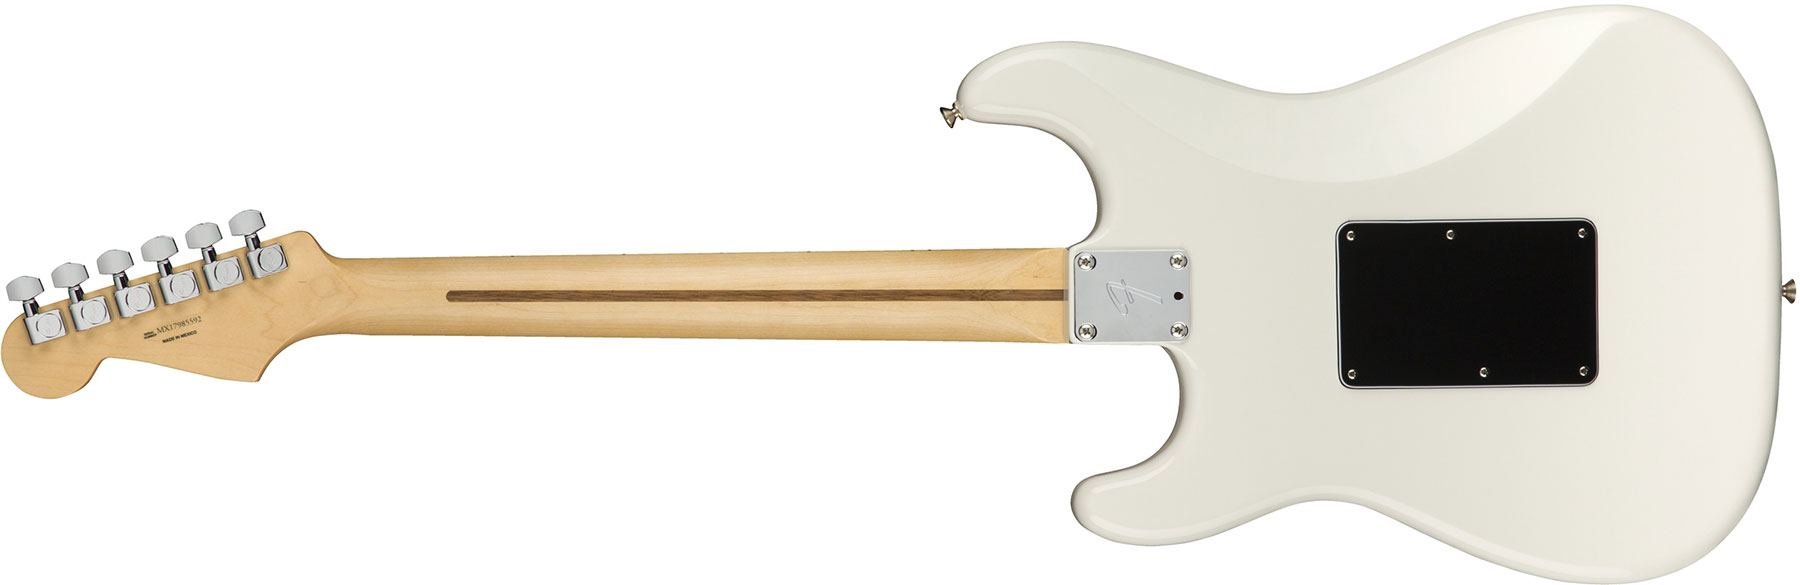 Fender Strat Player Floyd Rose Mex Hss Fr Mn - Polar White - Elektrische gitaar in Str-vorm - Variation 1